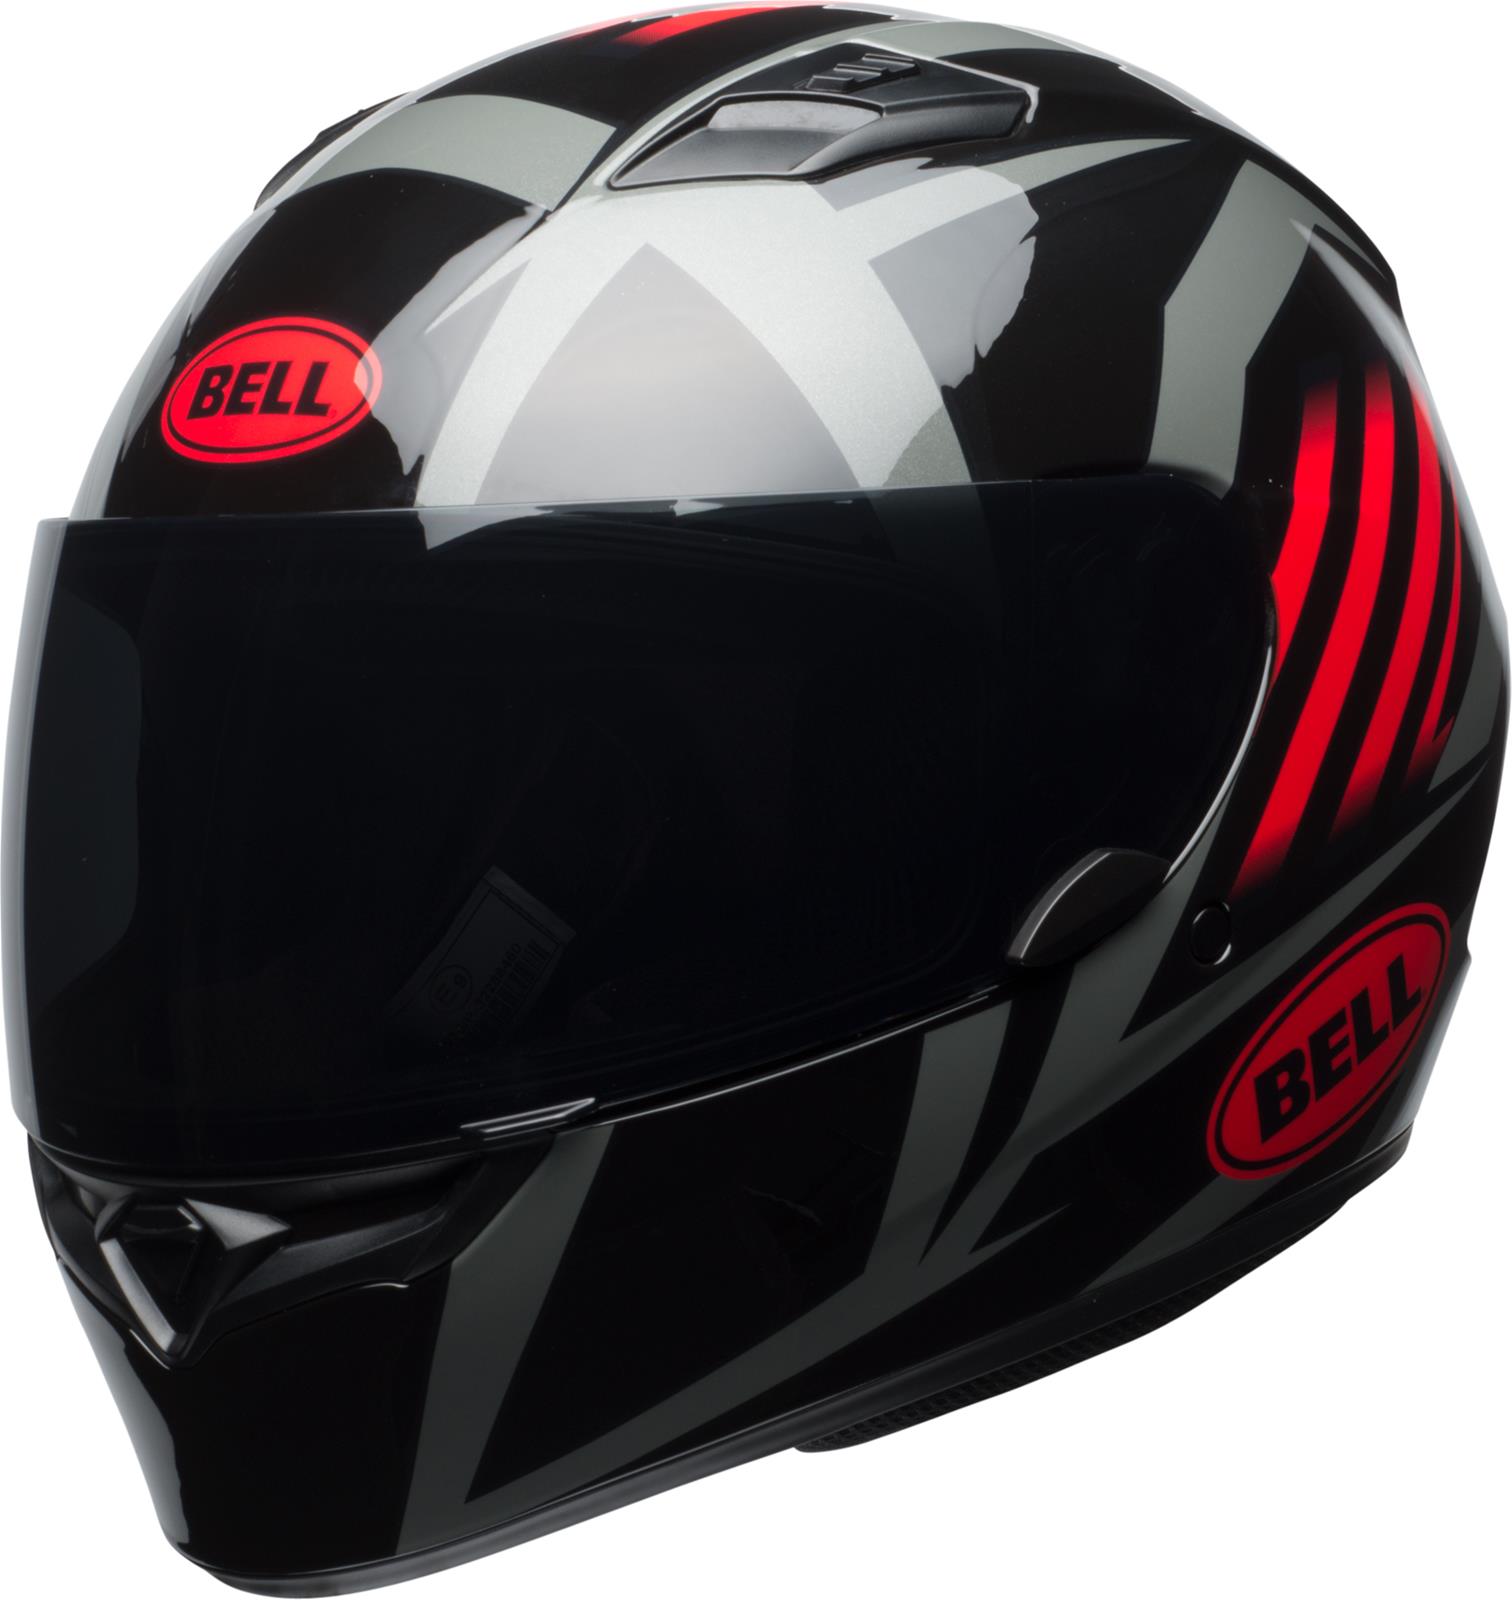 Bell Motorcycle Helmets 7092775 Bell Qualifier Helmets | Summit Racing